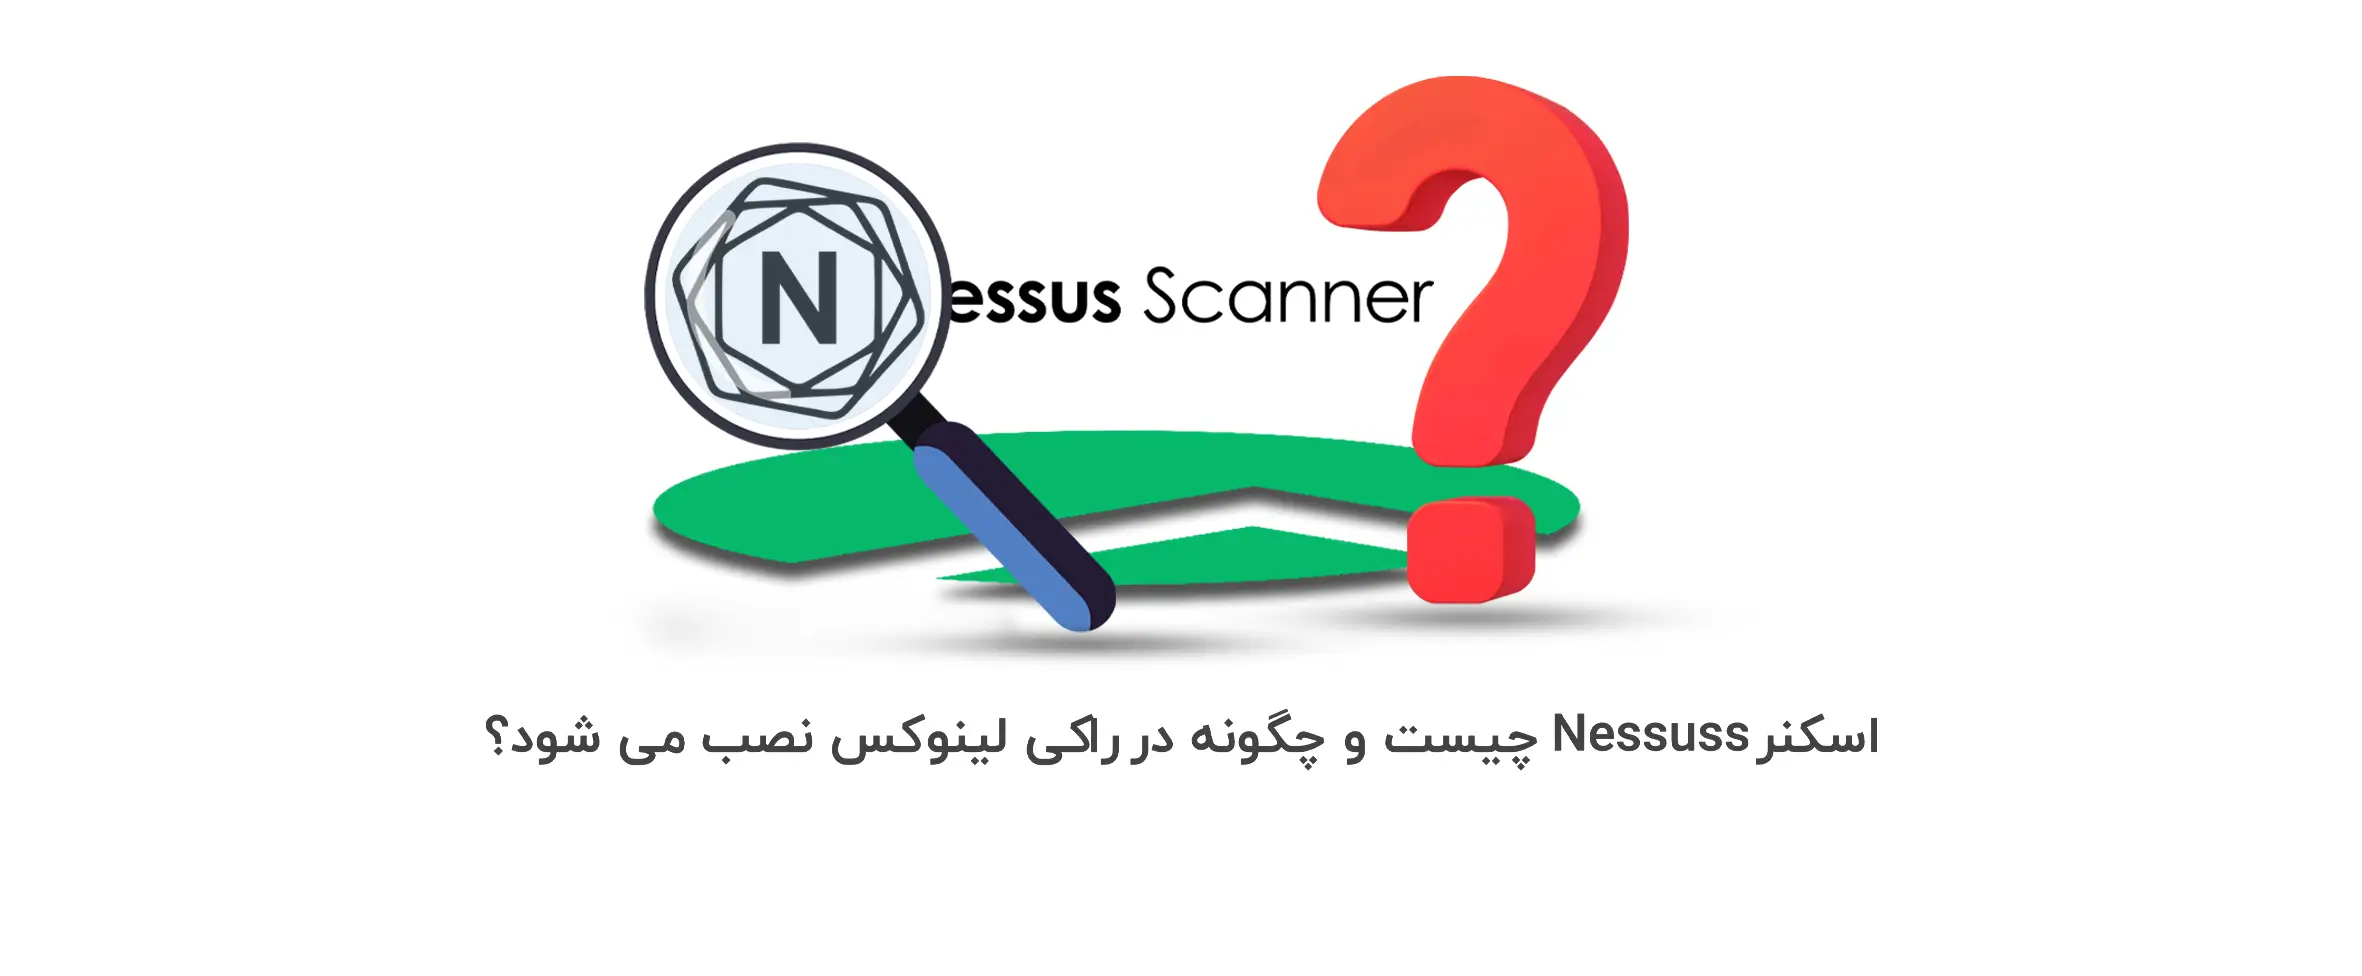 اسکنر Nessus چیست و چگونه در راکی لینوکس نصب می شود؟